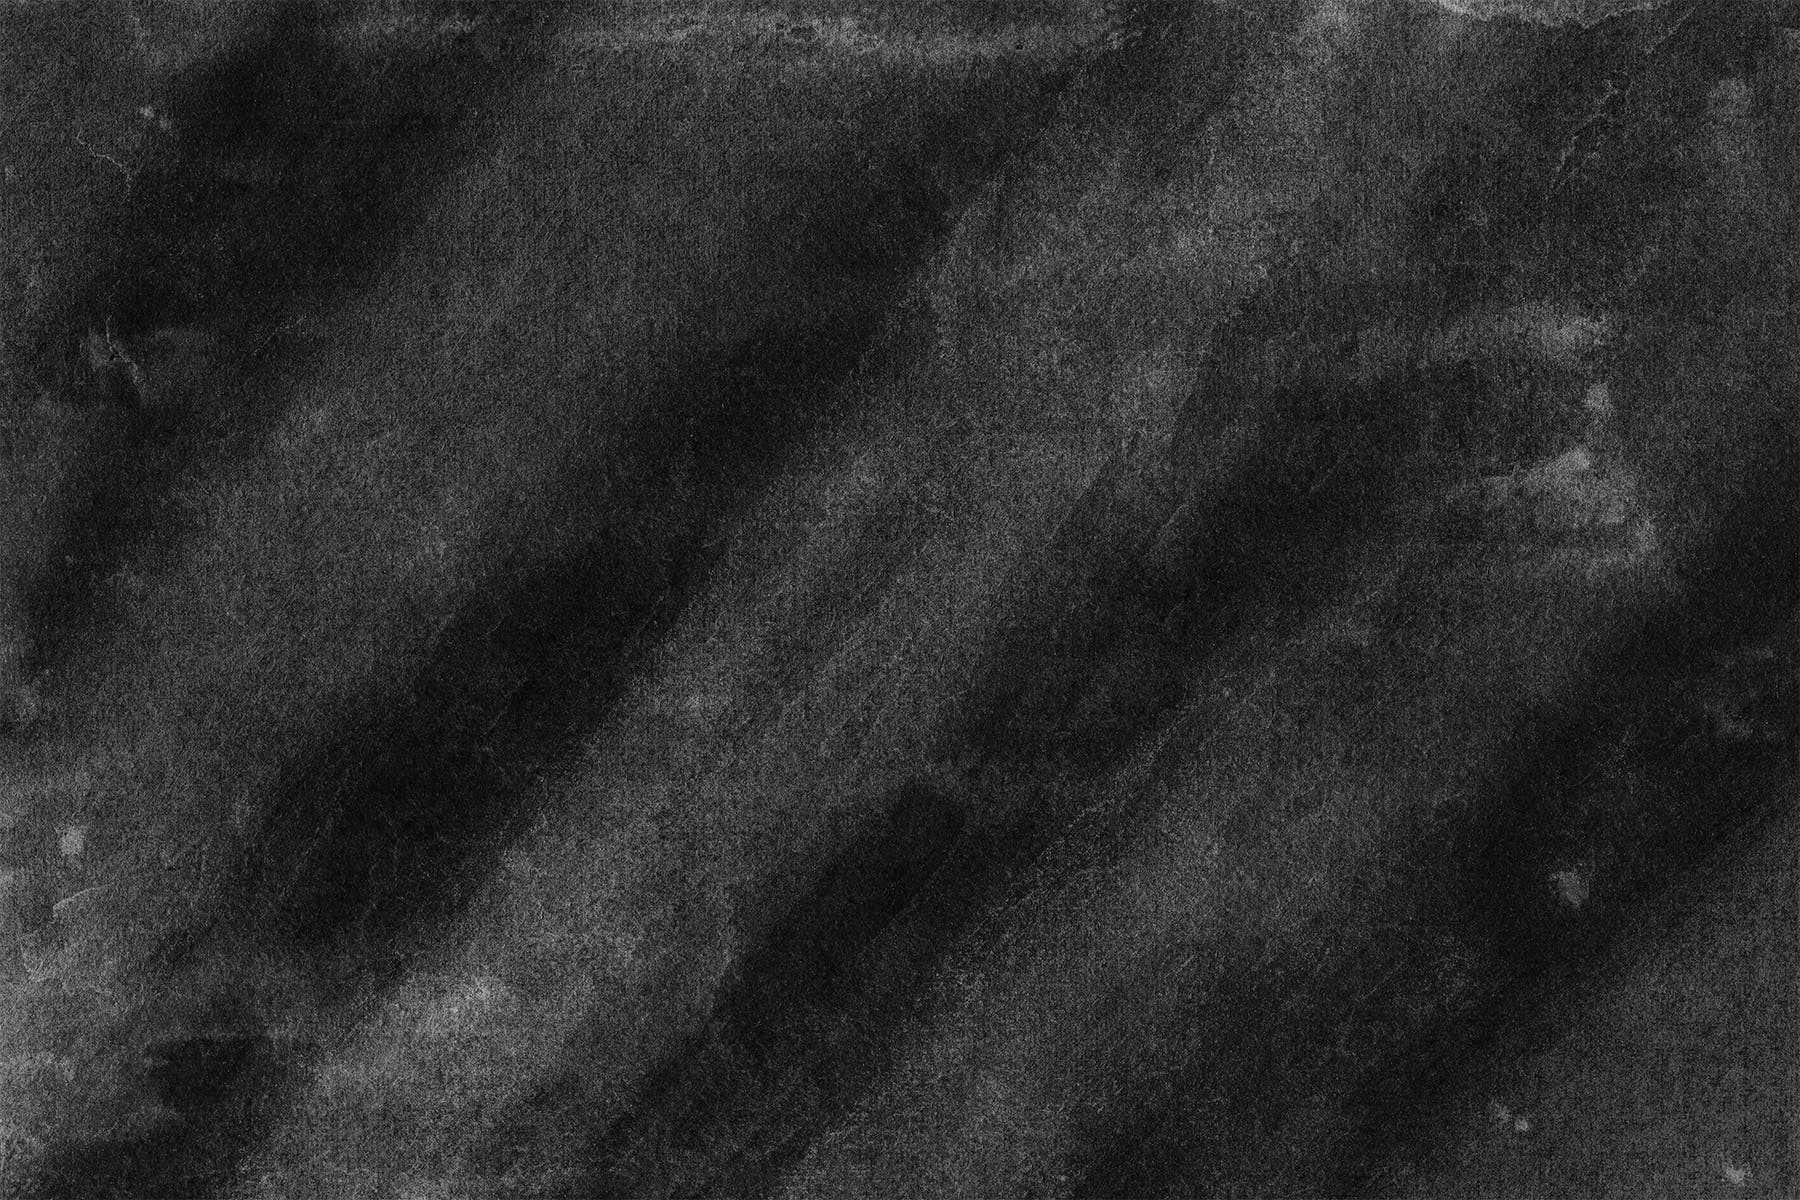 黑色墨水肌理纹理高清背景图片素材 Noir Backgrounds插图2